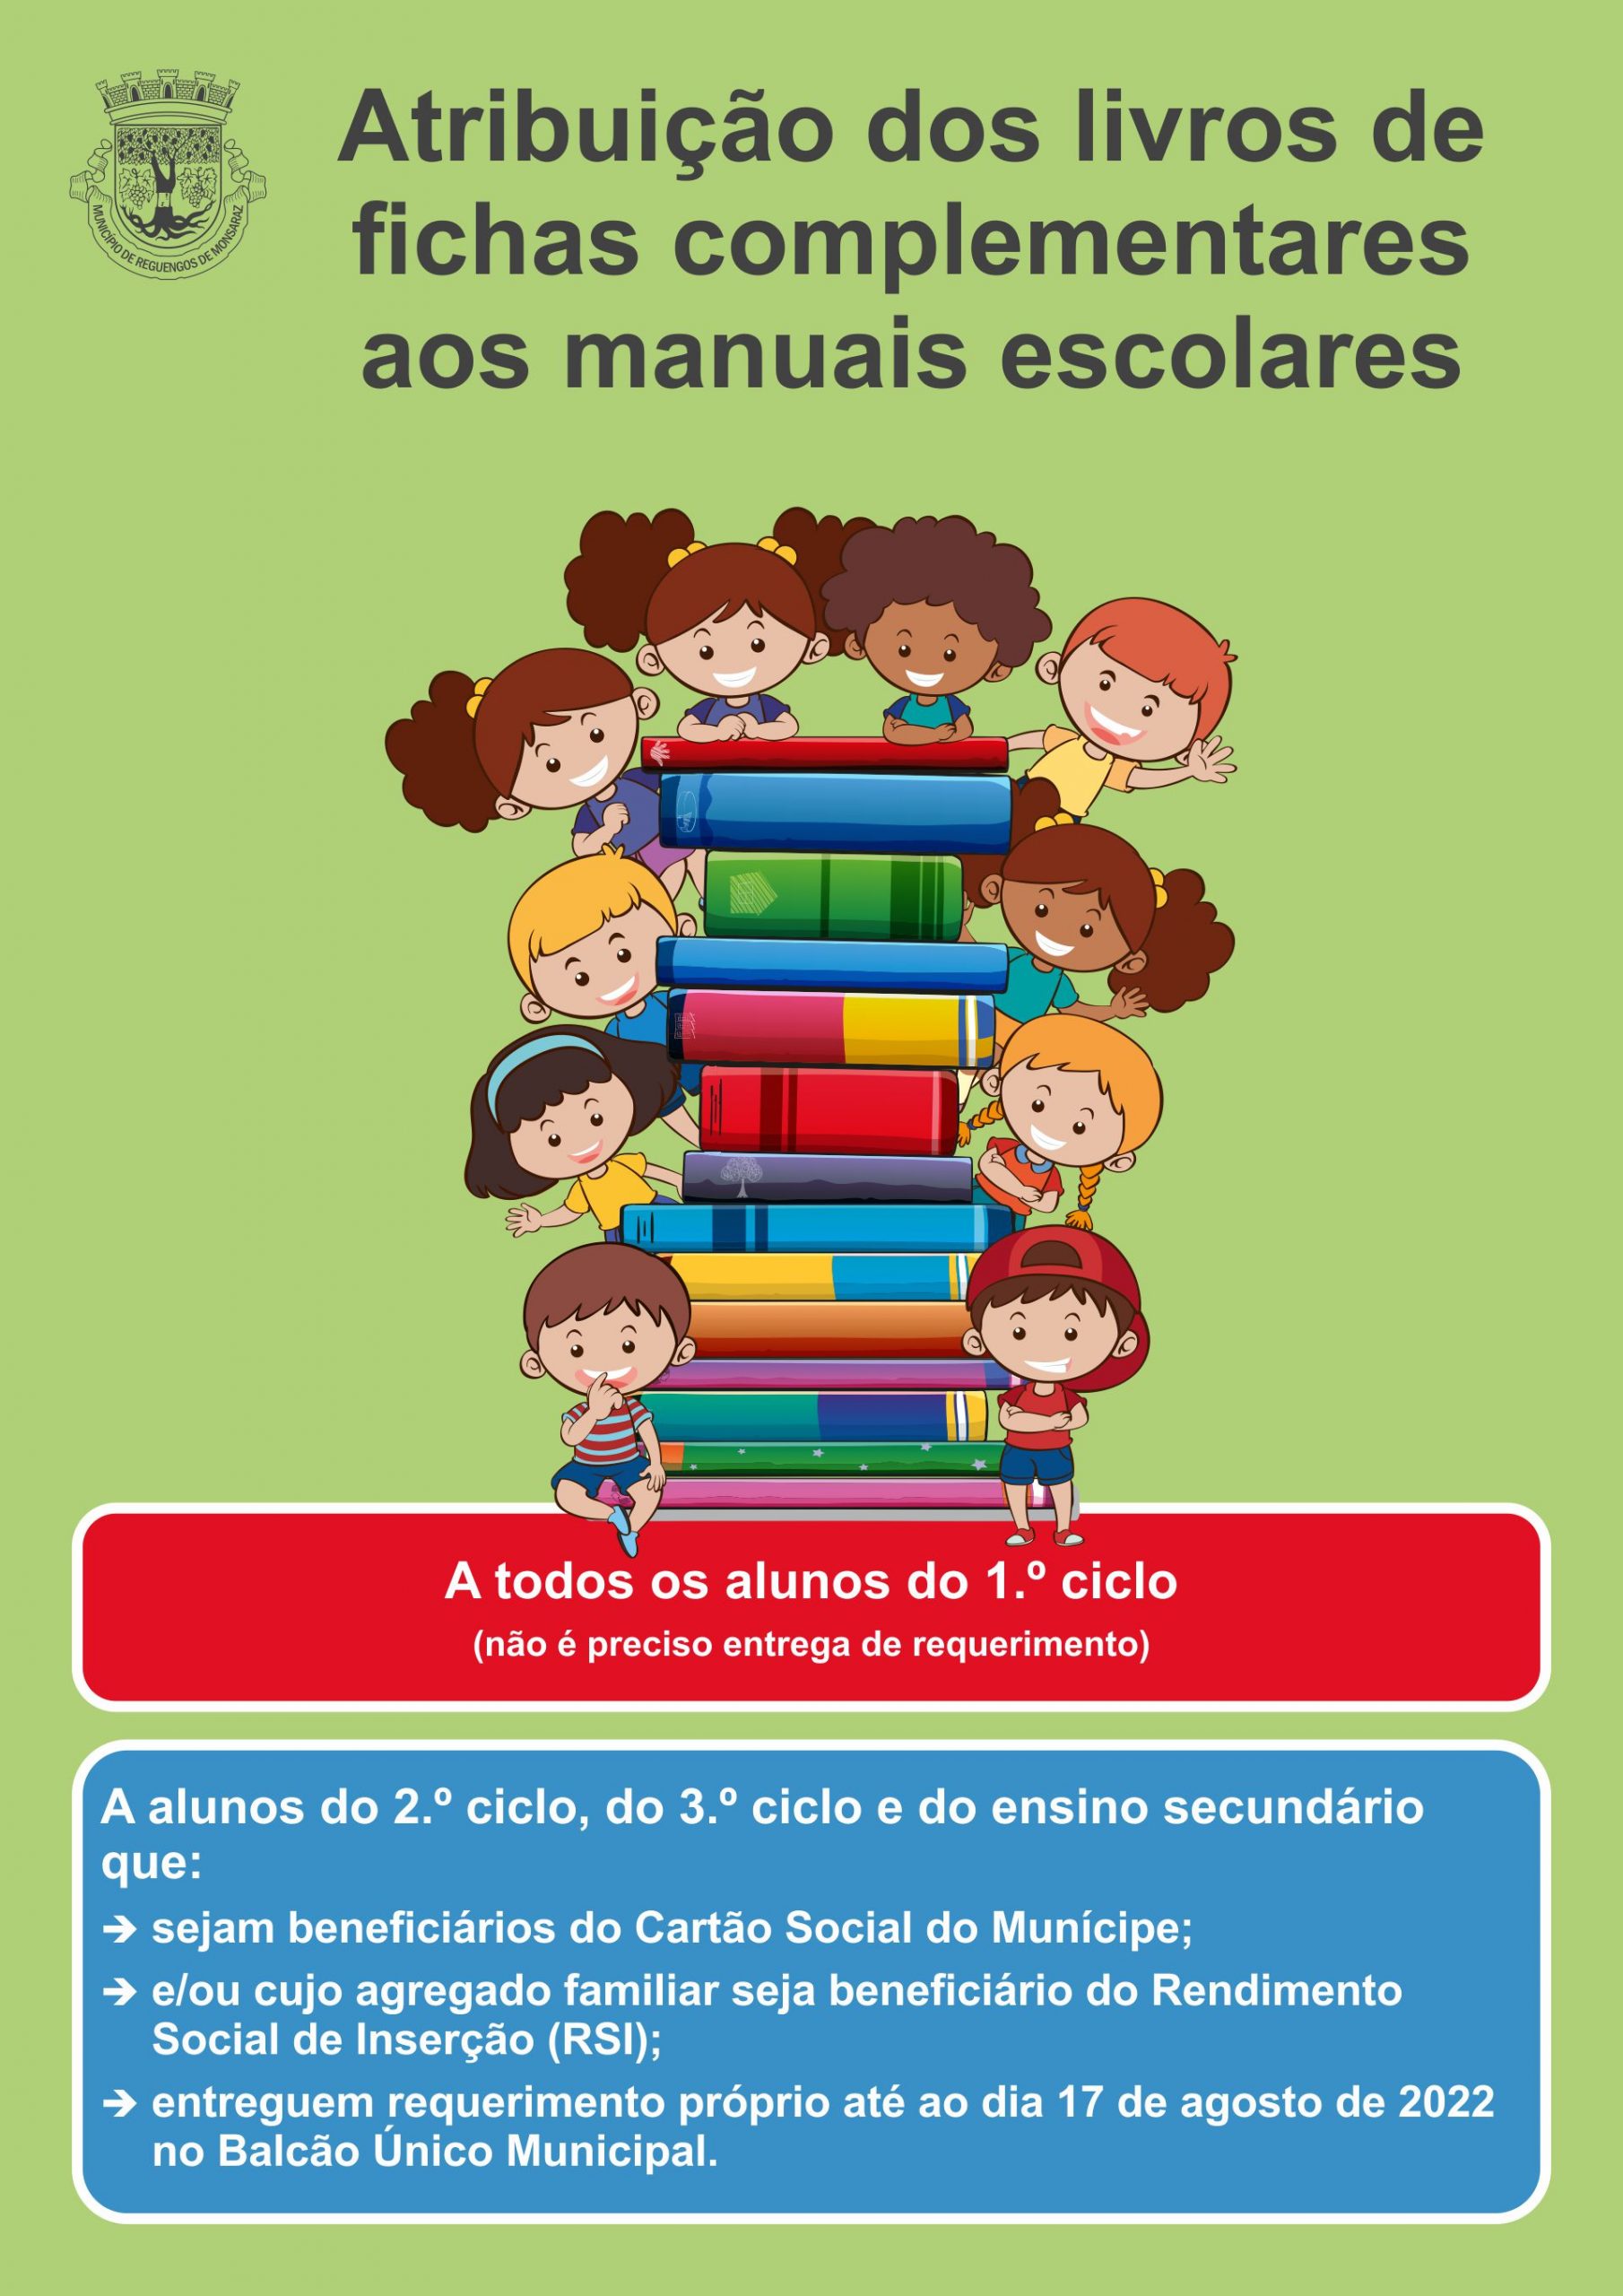 Atribuição dos livros de fichas complementares aos manuais escolares no ano letivo 2022/2023